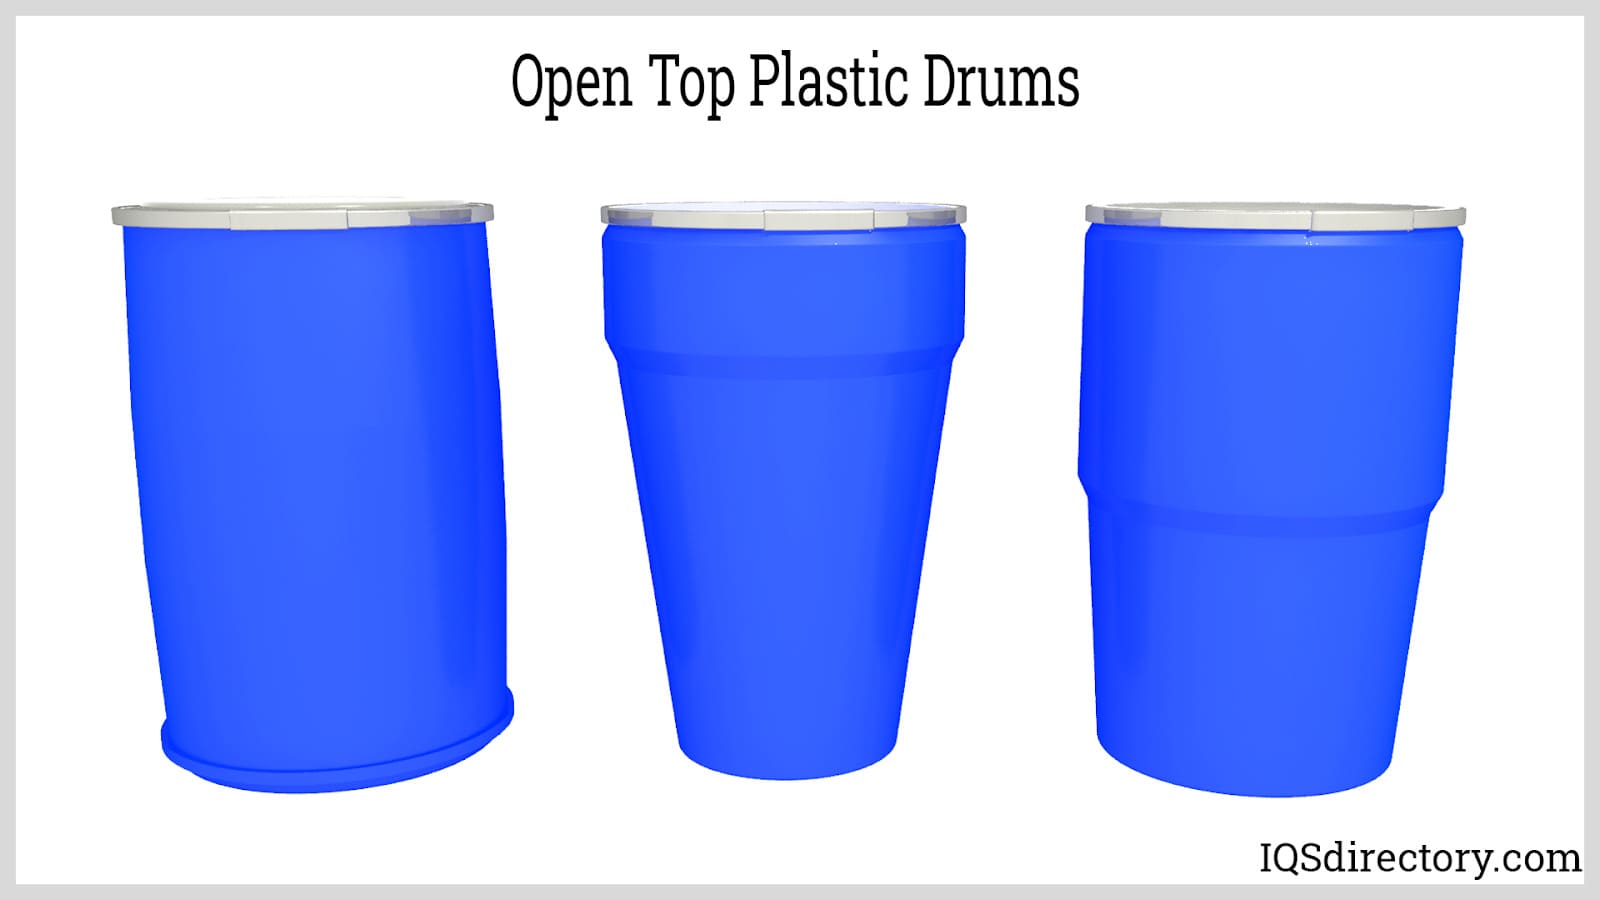 Open Top Plastic Drums